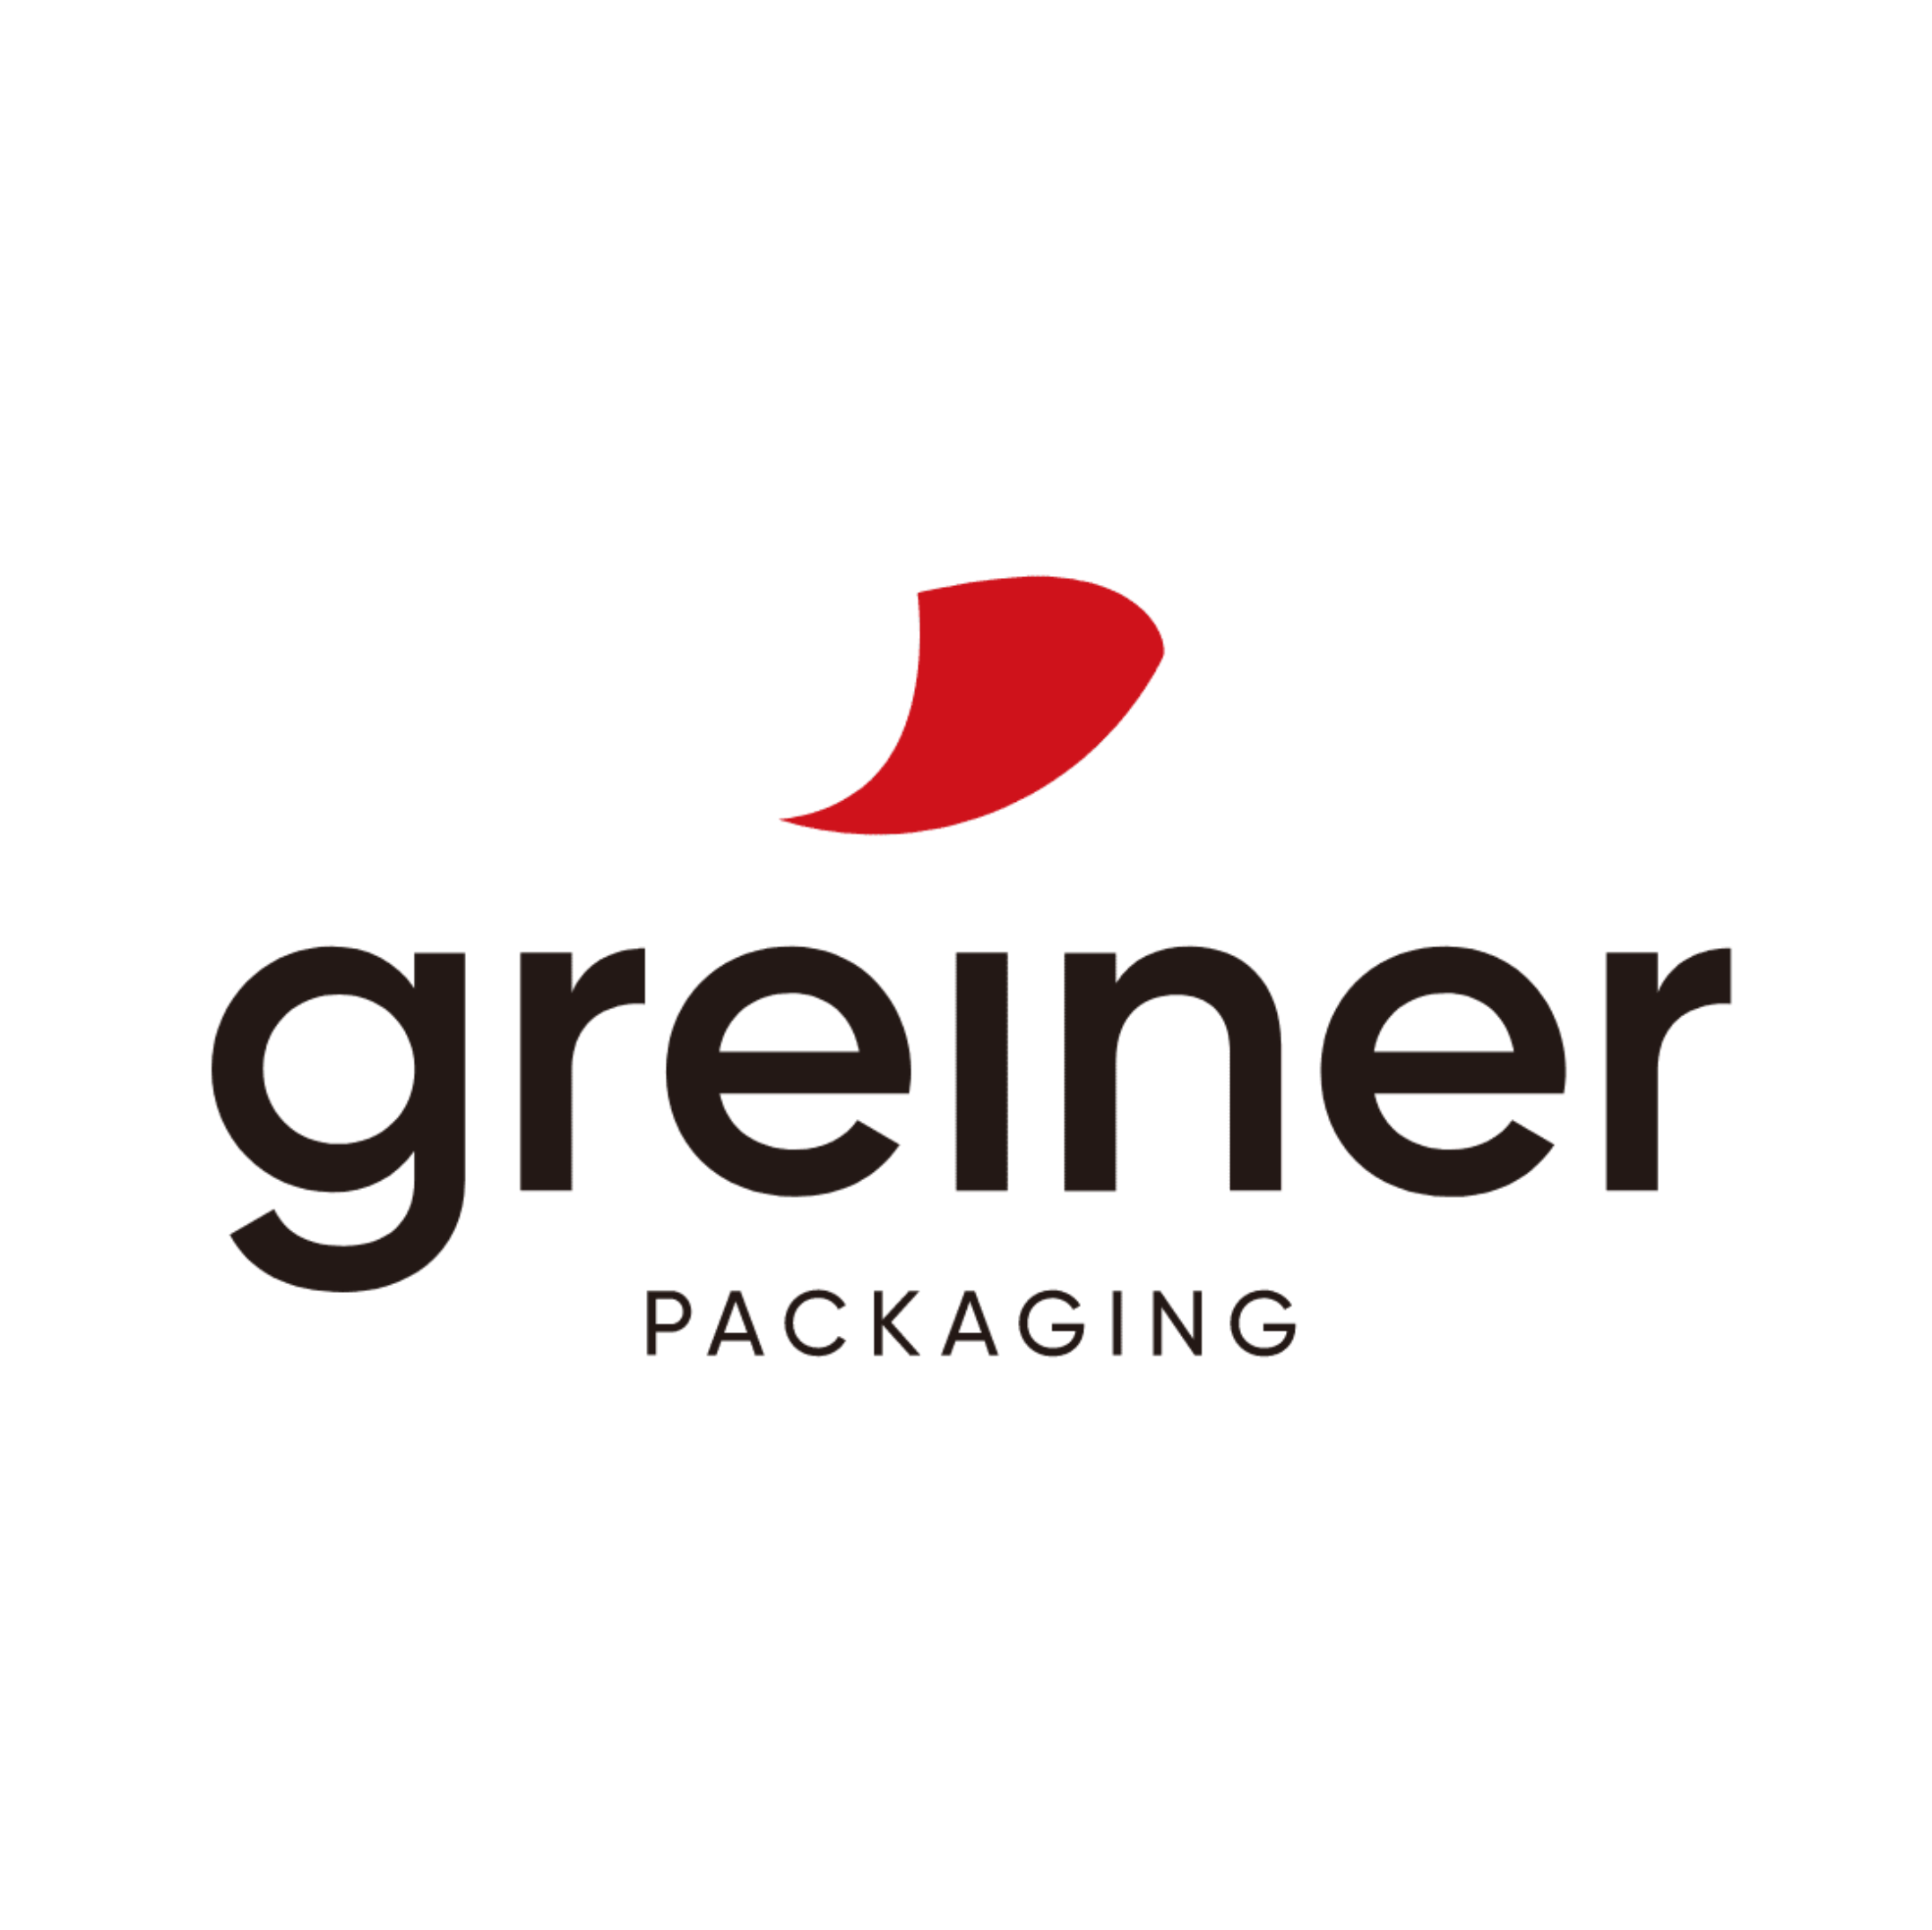 Greiner Packaging Logo